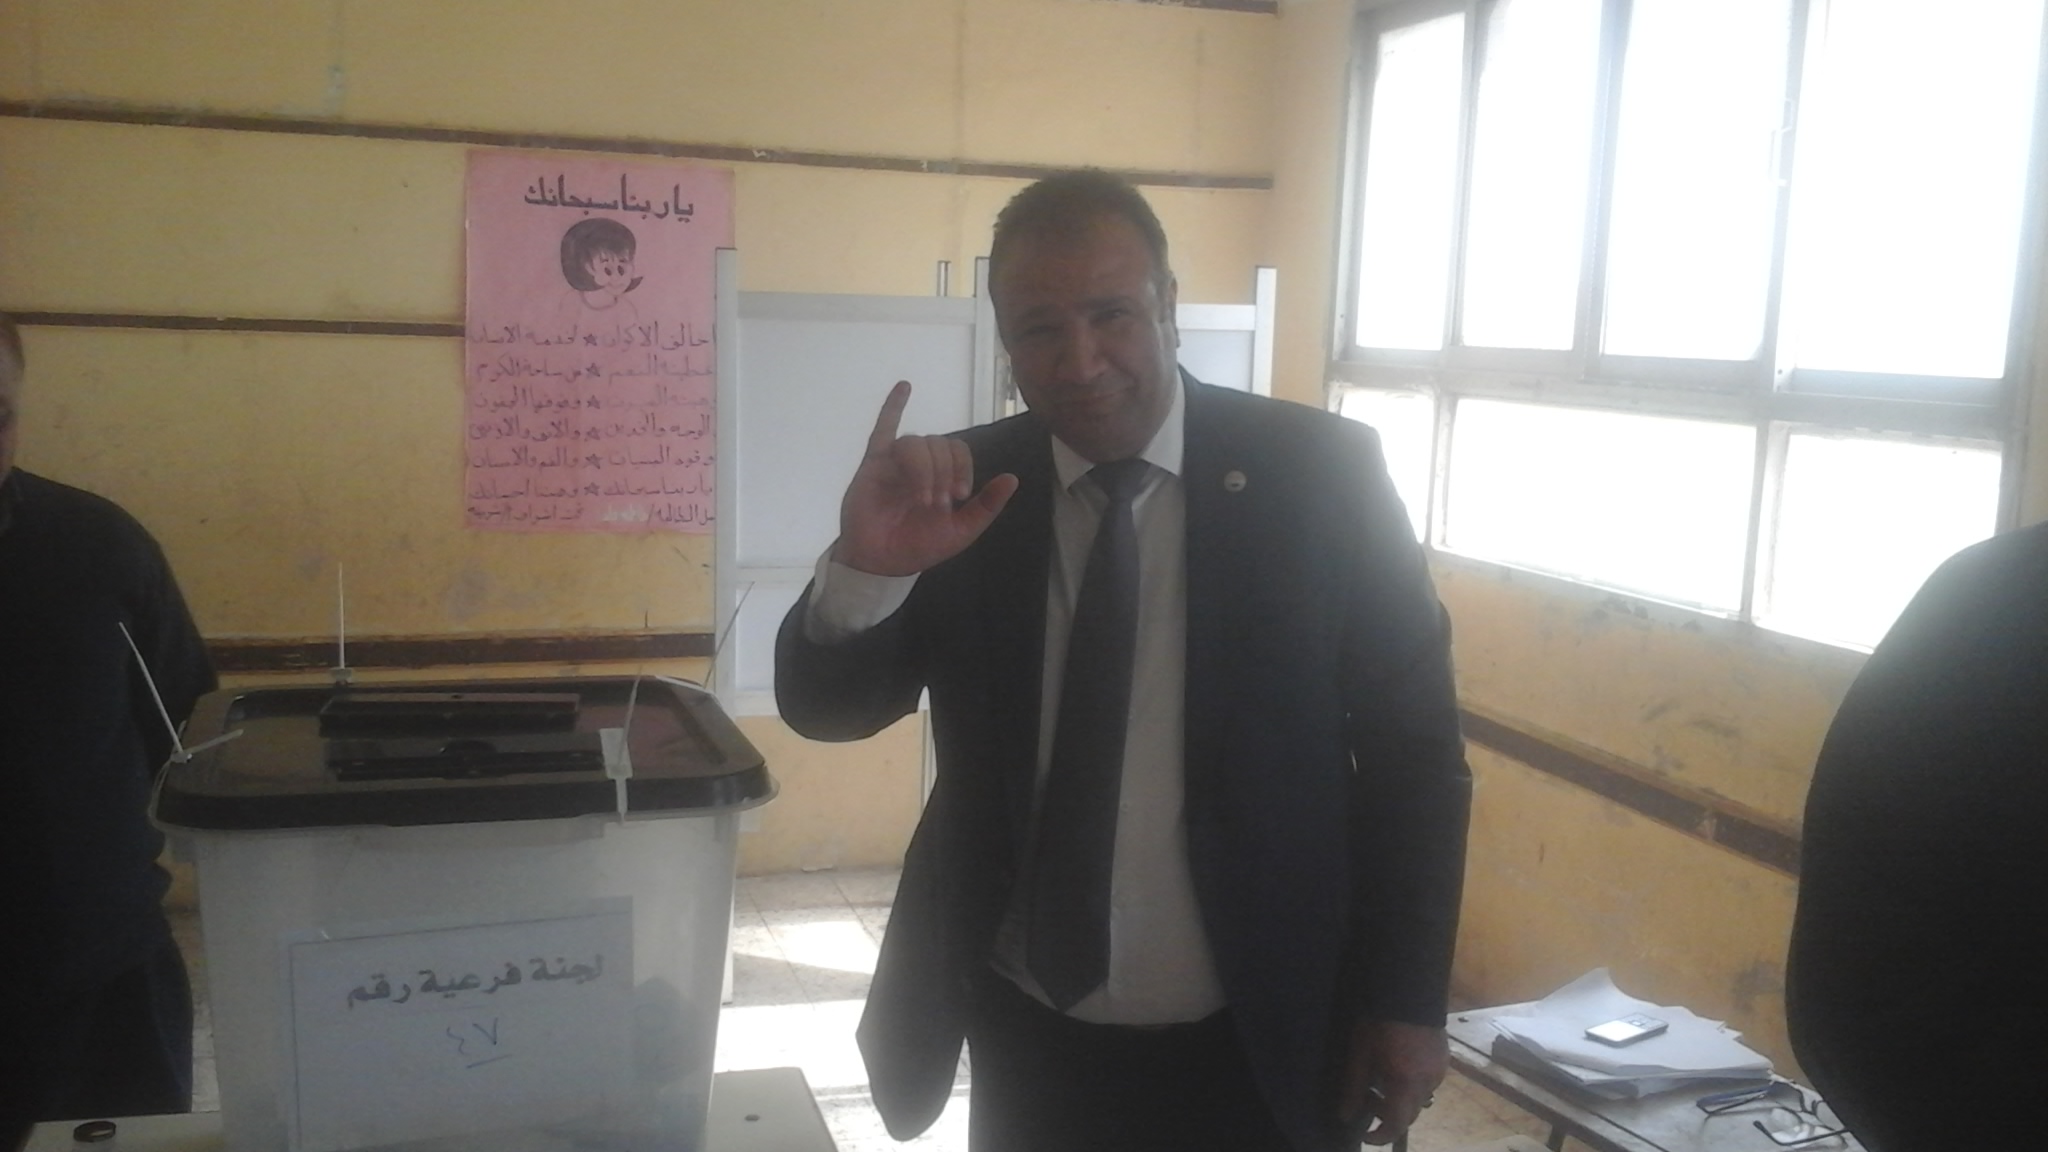  النائب علاء ناجى يدلى بصوته فى الاستفتاء (3)